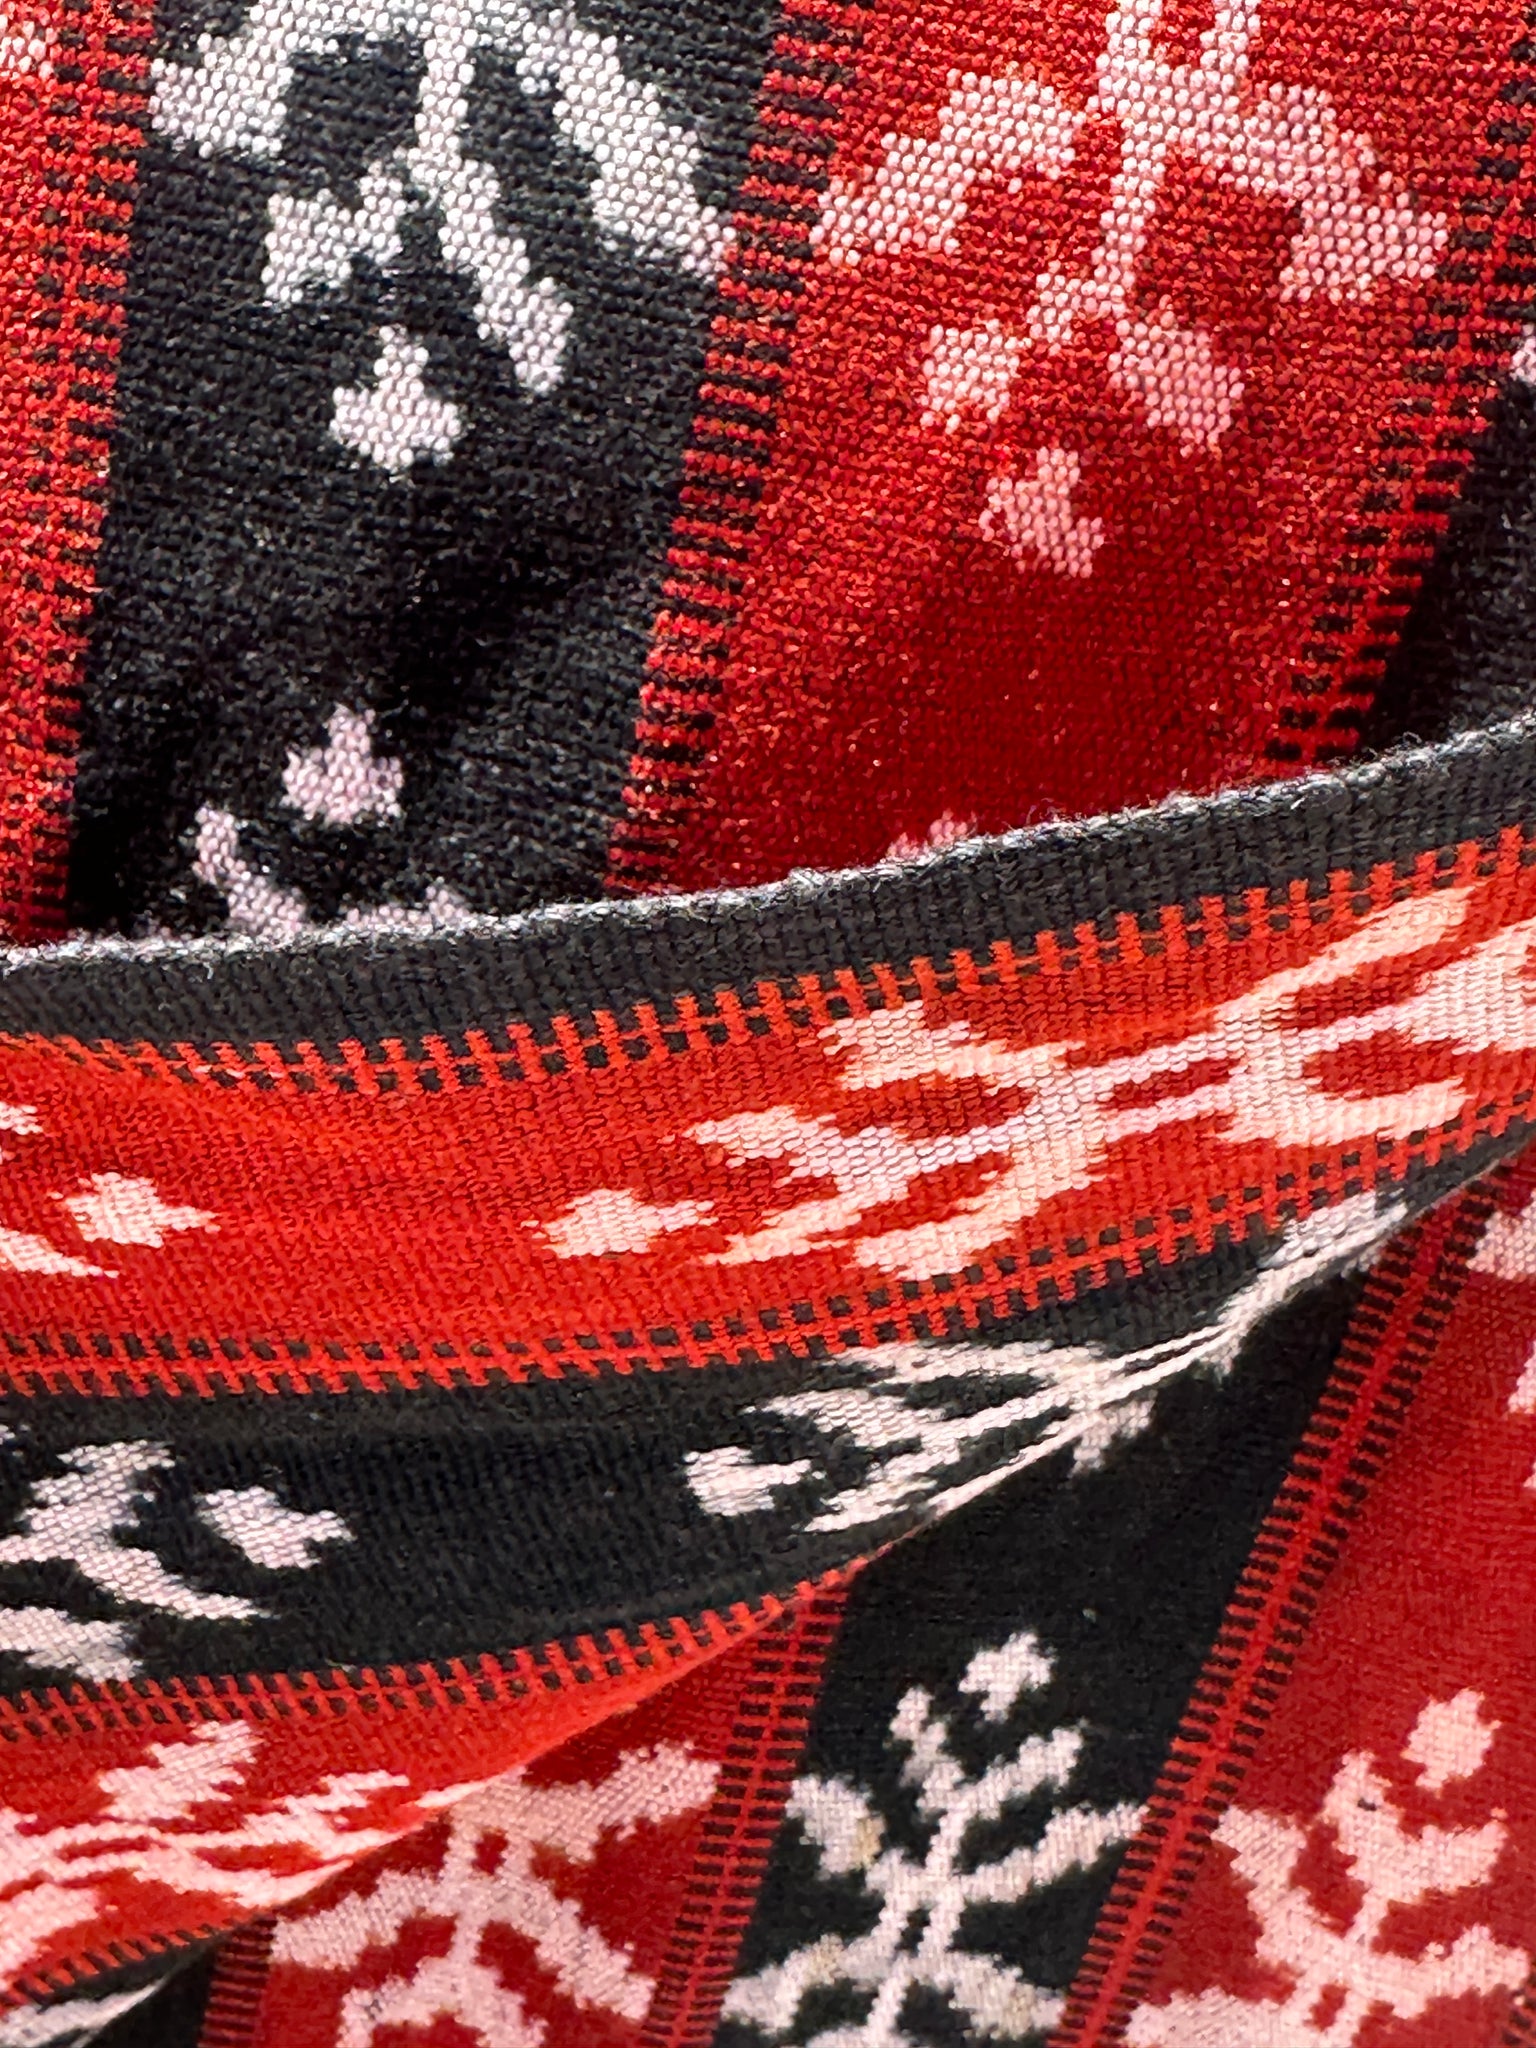 Ikat, tissu traditionnel indonésien de l'ile Savu (Timor) rouge et noir 2m25x75